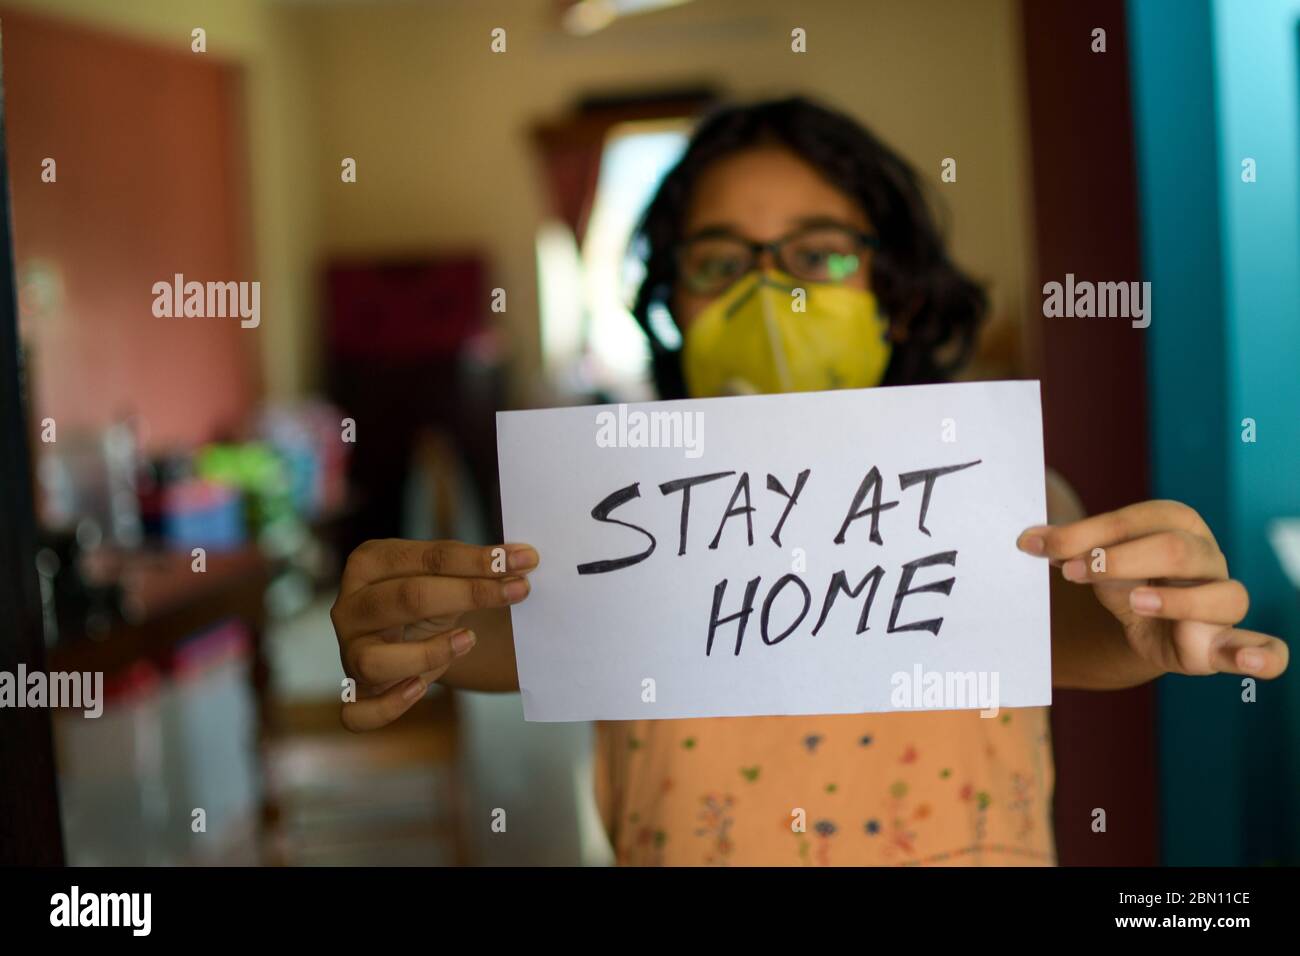 Una niña India que lleva una máscara de cara sostiene un cartel en las manos mostrando un mensaje "hay en casa" durante la pandemia de COVID-19 para mantener el distanciamiento social. Foto de stock